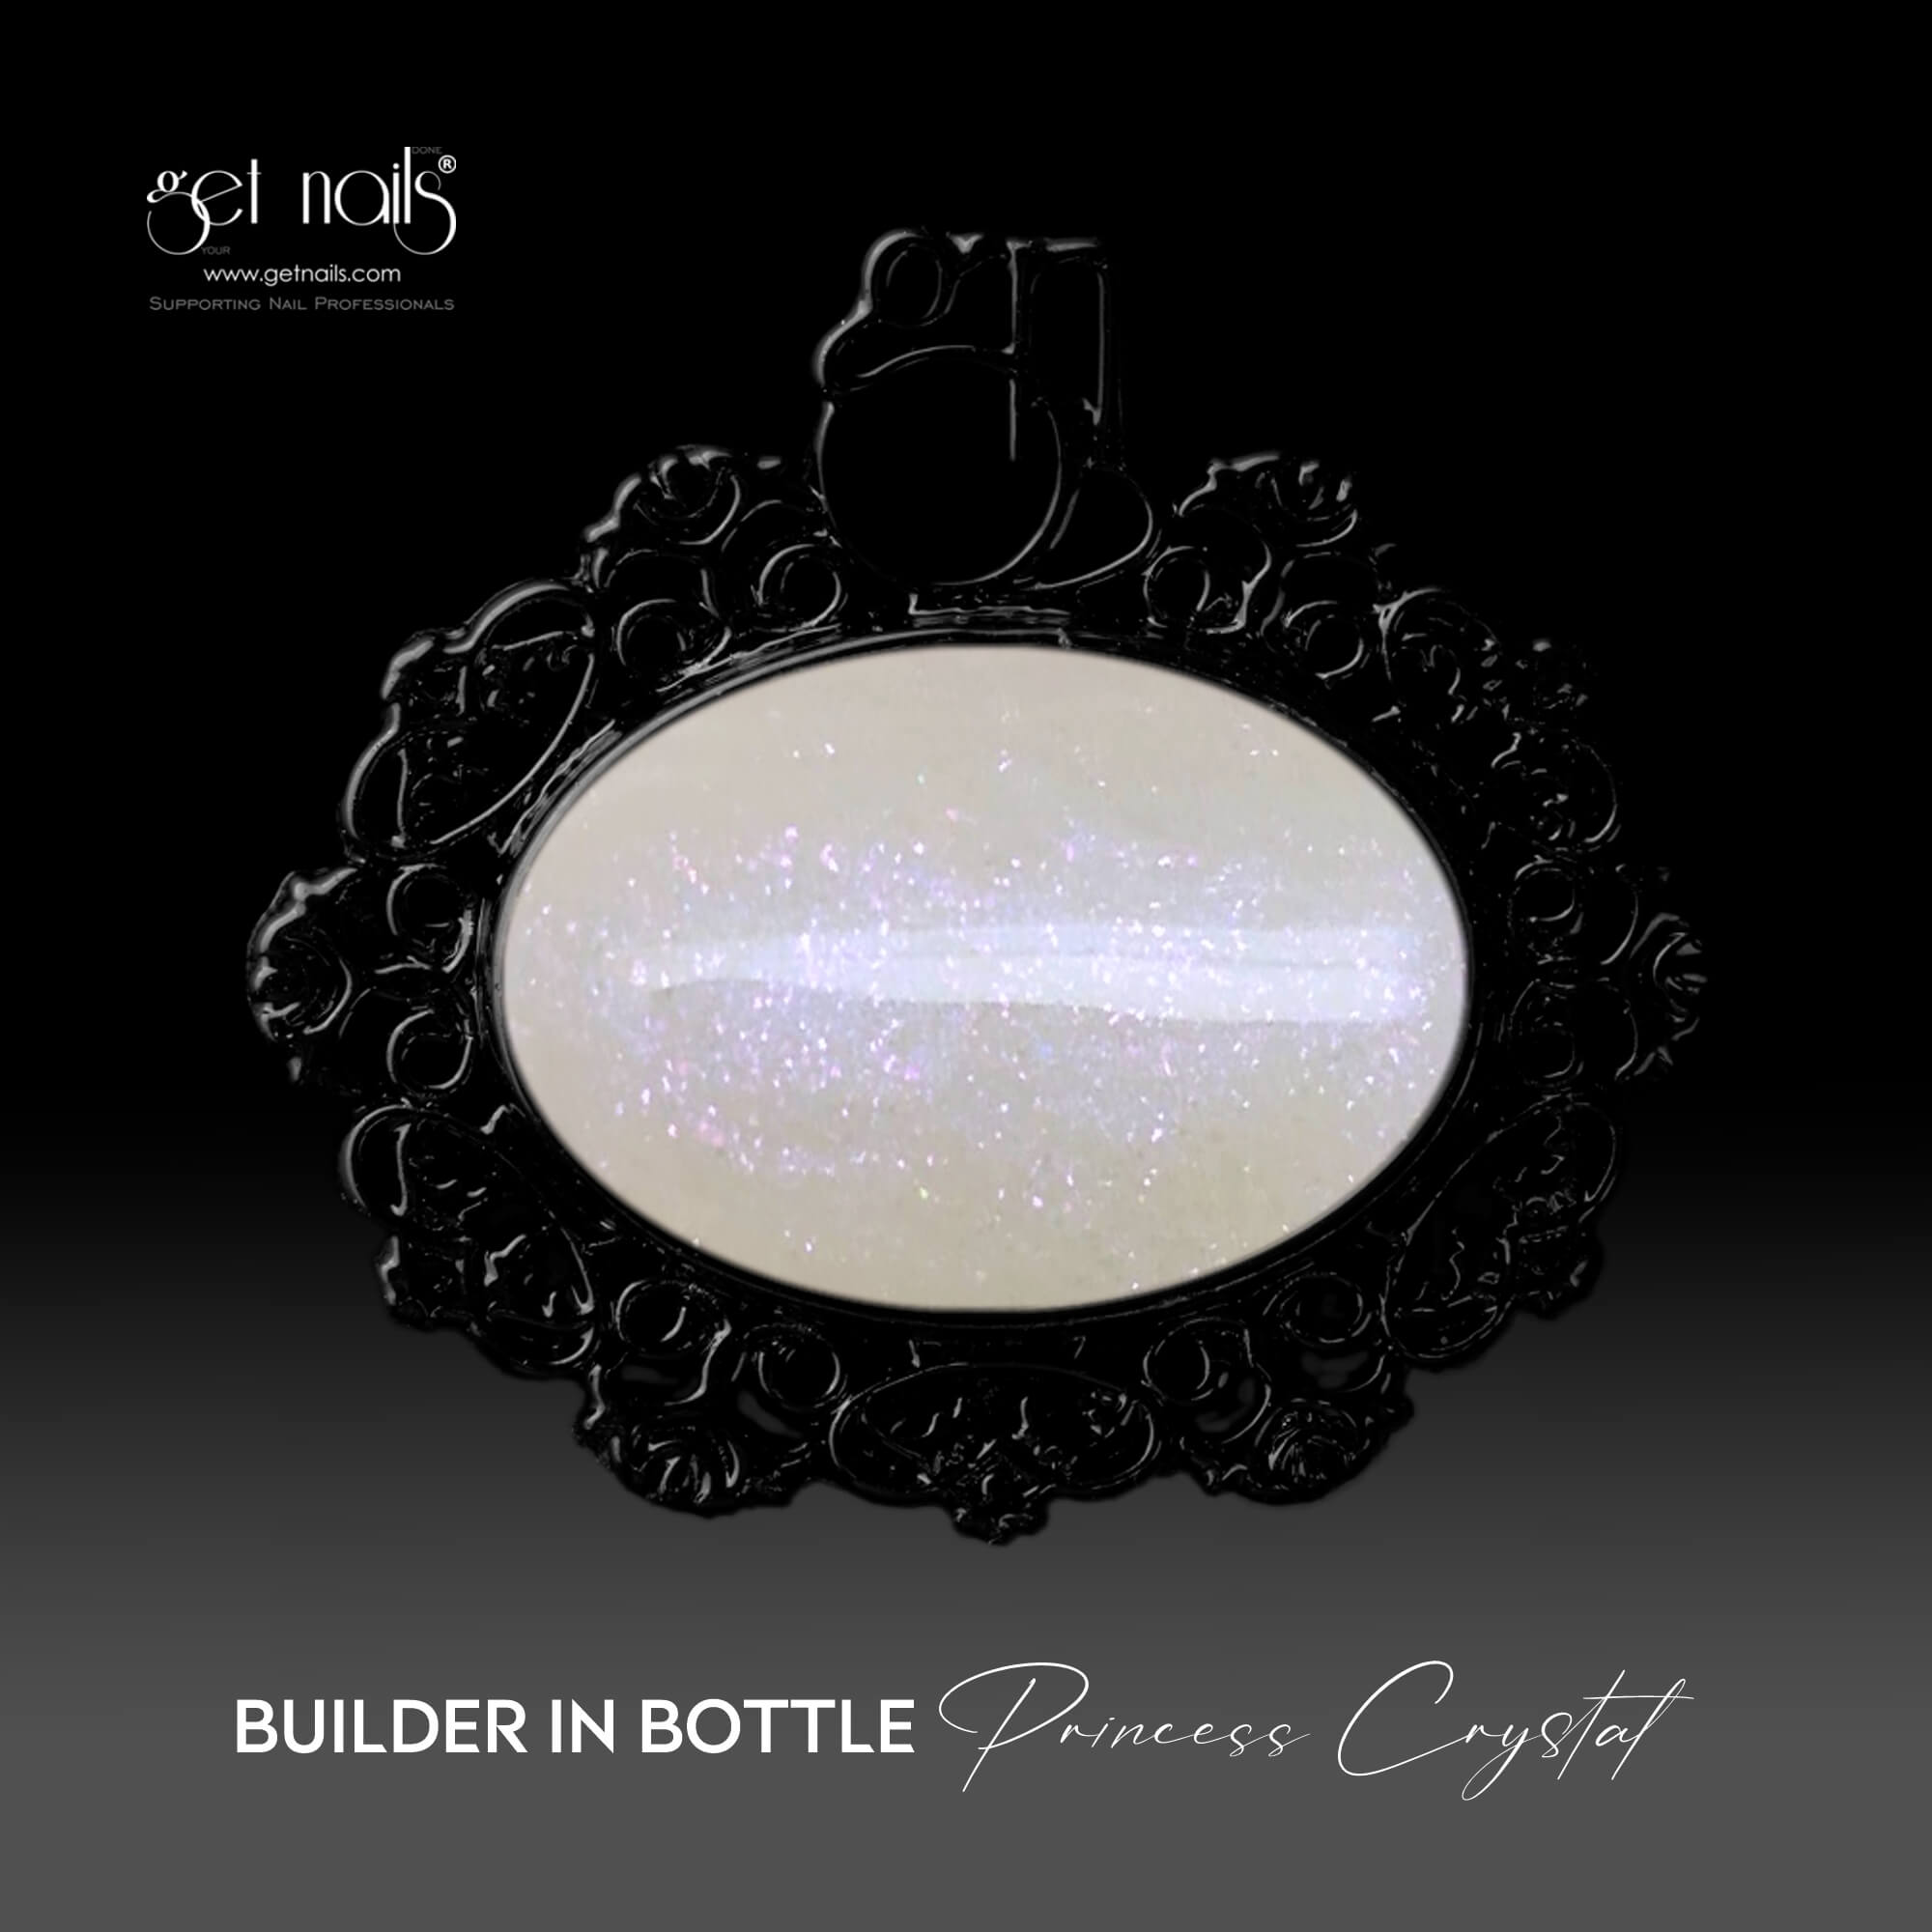 Ottieni Nails Austria - Costruttore in bottiglia Princess Crystal 15g